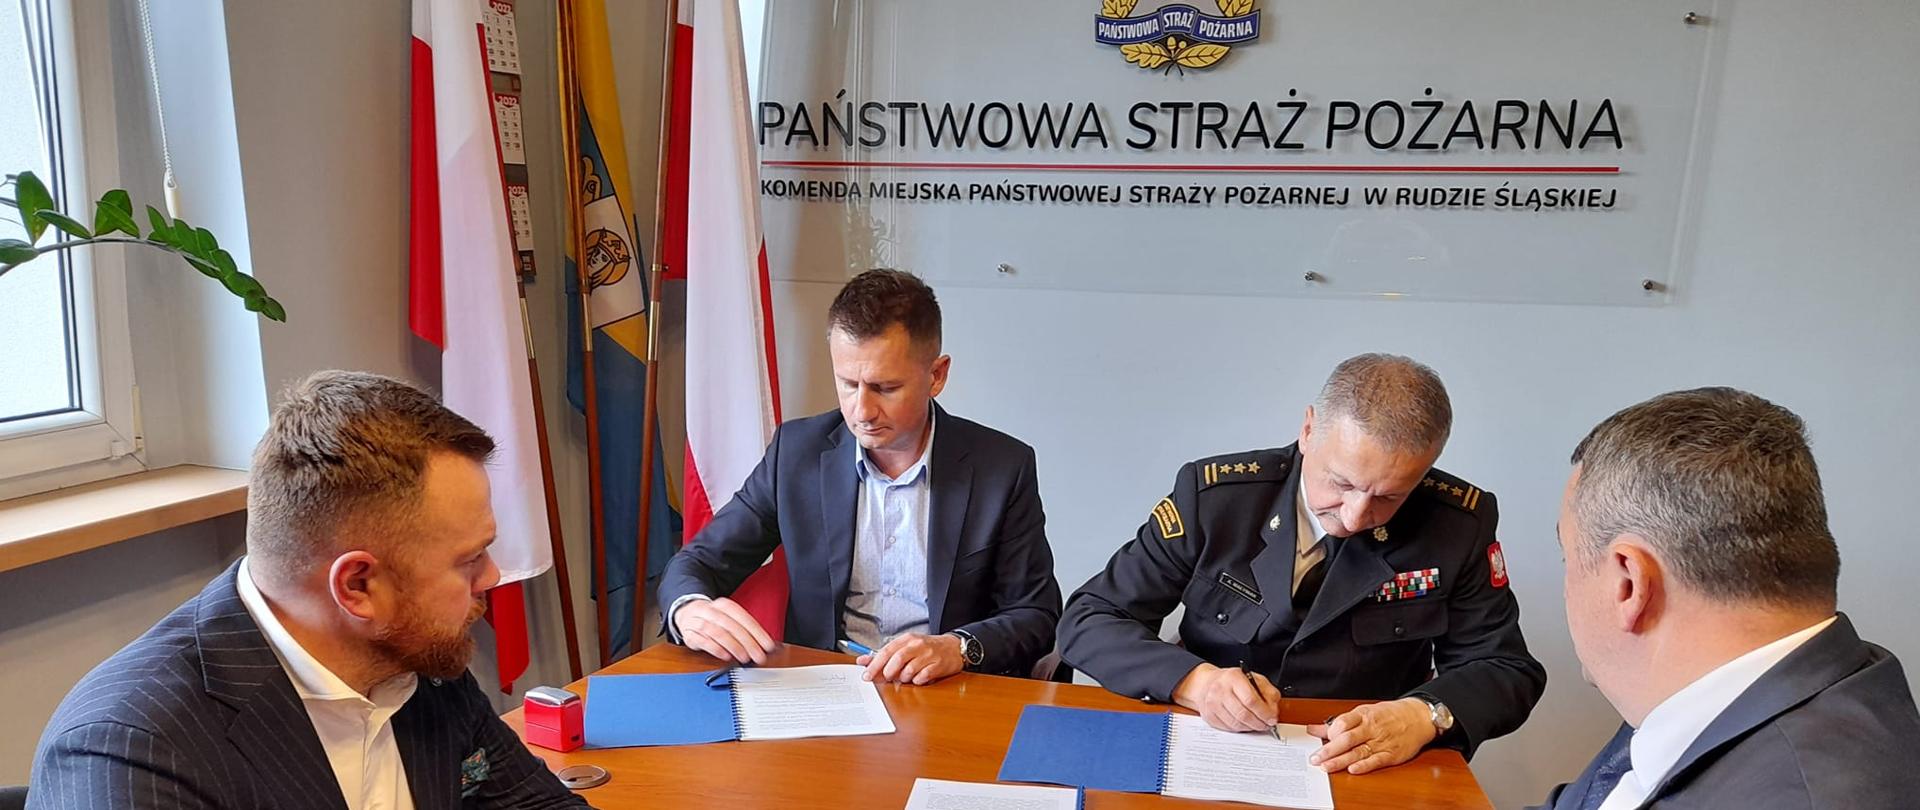 Zdjęcie przedstawia spotkanie, na którym Komendant PSP w Rudzie Śląskiej podpisuje umowę z firmą ANNA-BUD sp. z o.o. na budowę nowej strażnicy PSP w Rudzie Śląskiej.